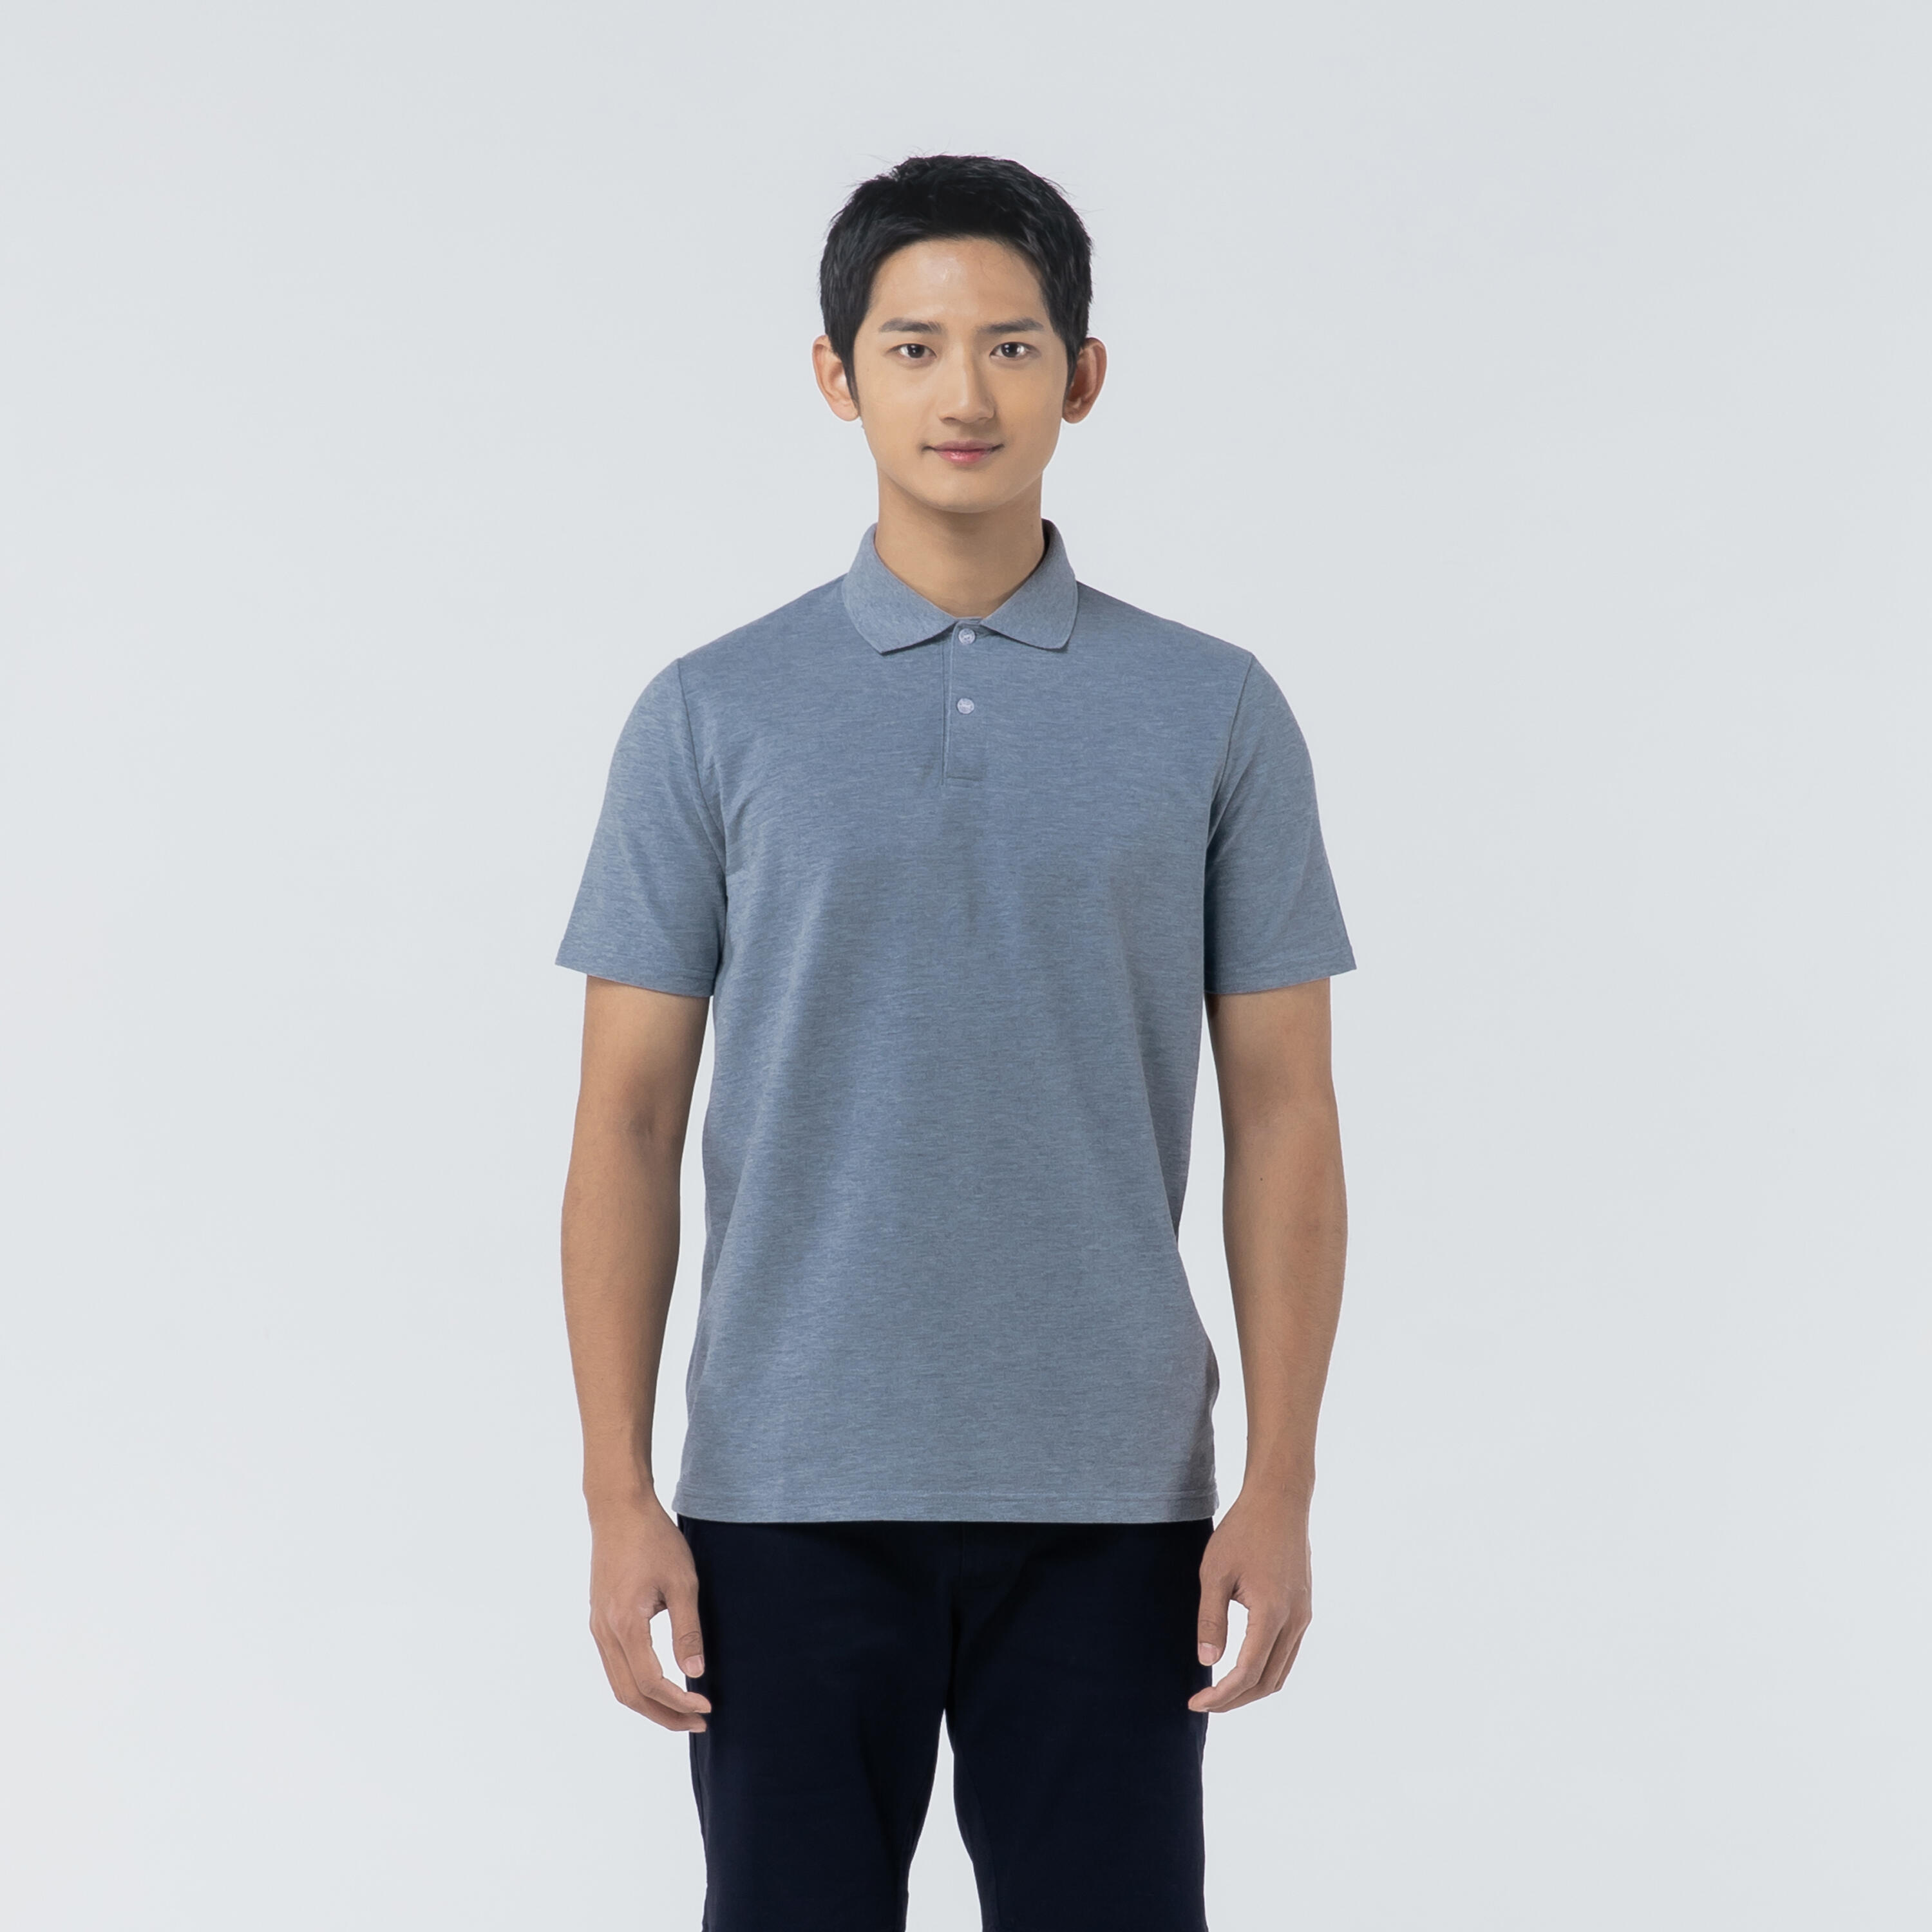 Men's golf short-sleeved polo shirt MW500 mottled grey 9/39